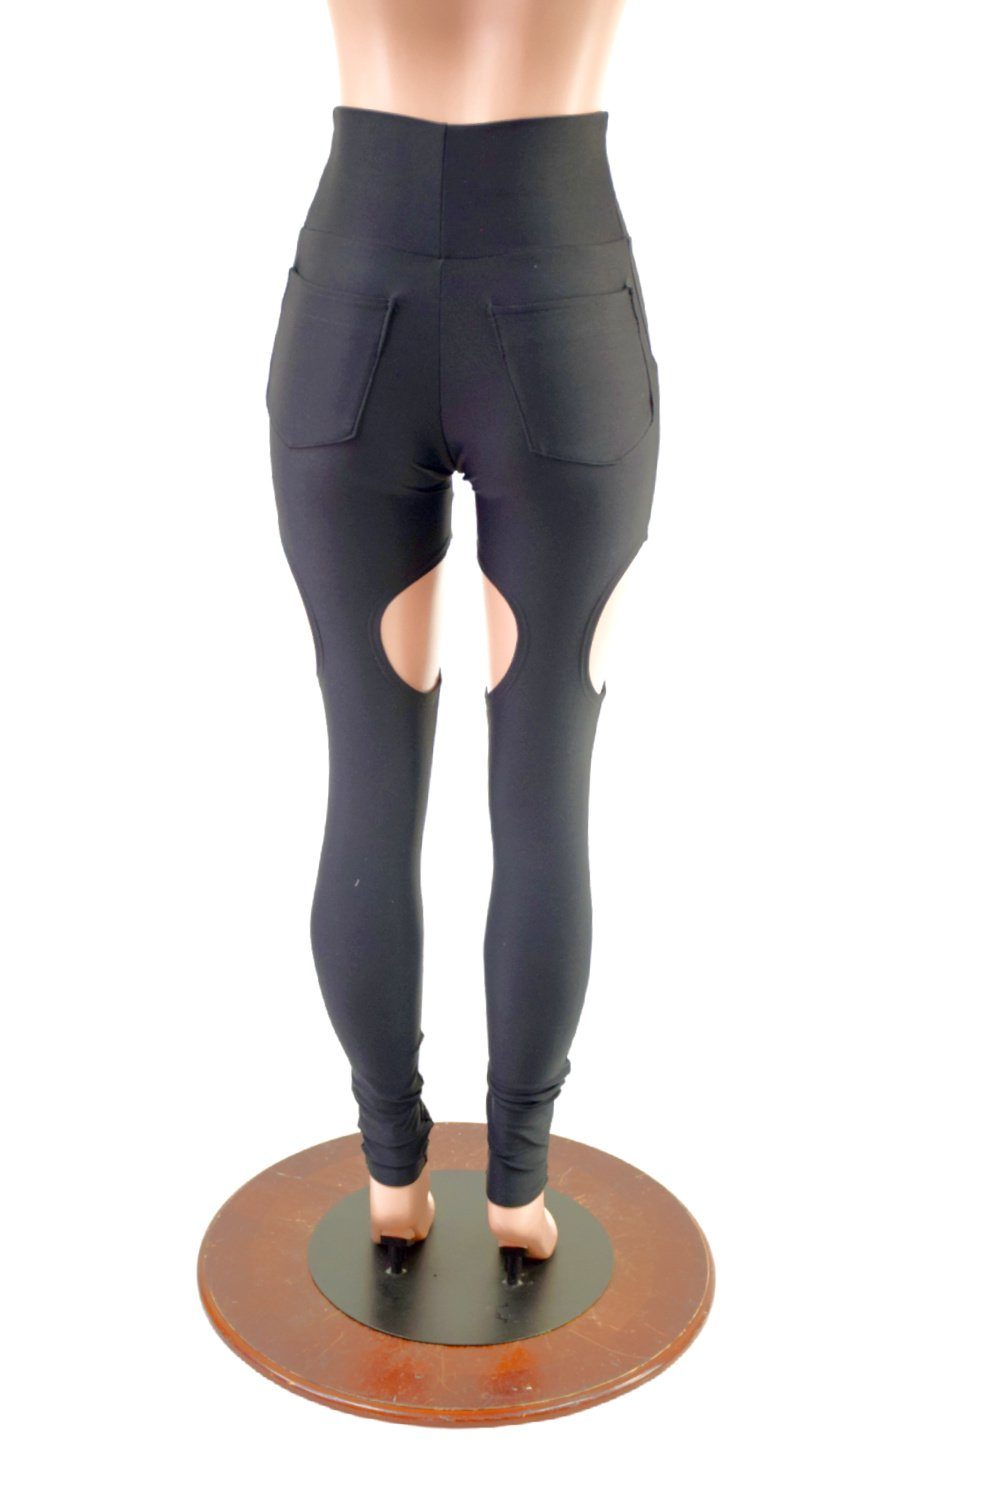 Kate Hudson's 'chap-style' butt leggings design ripped online